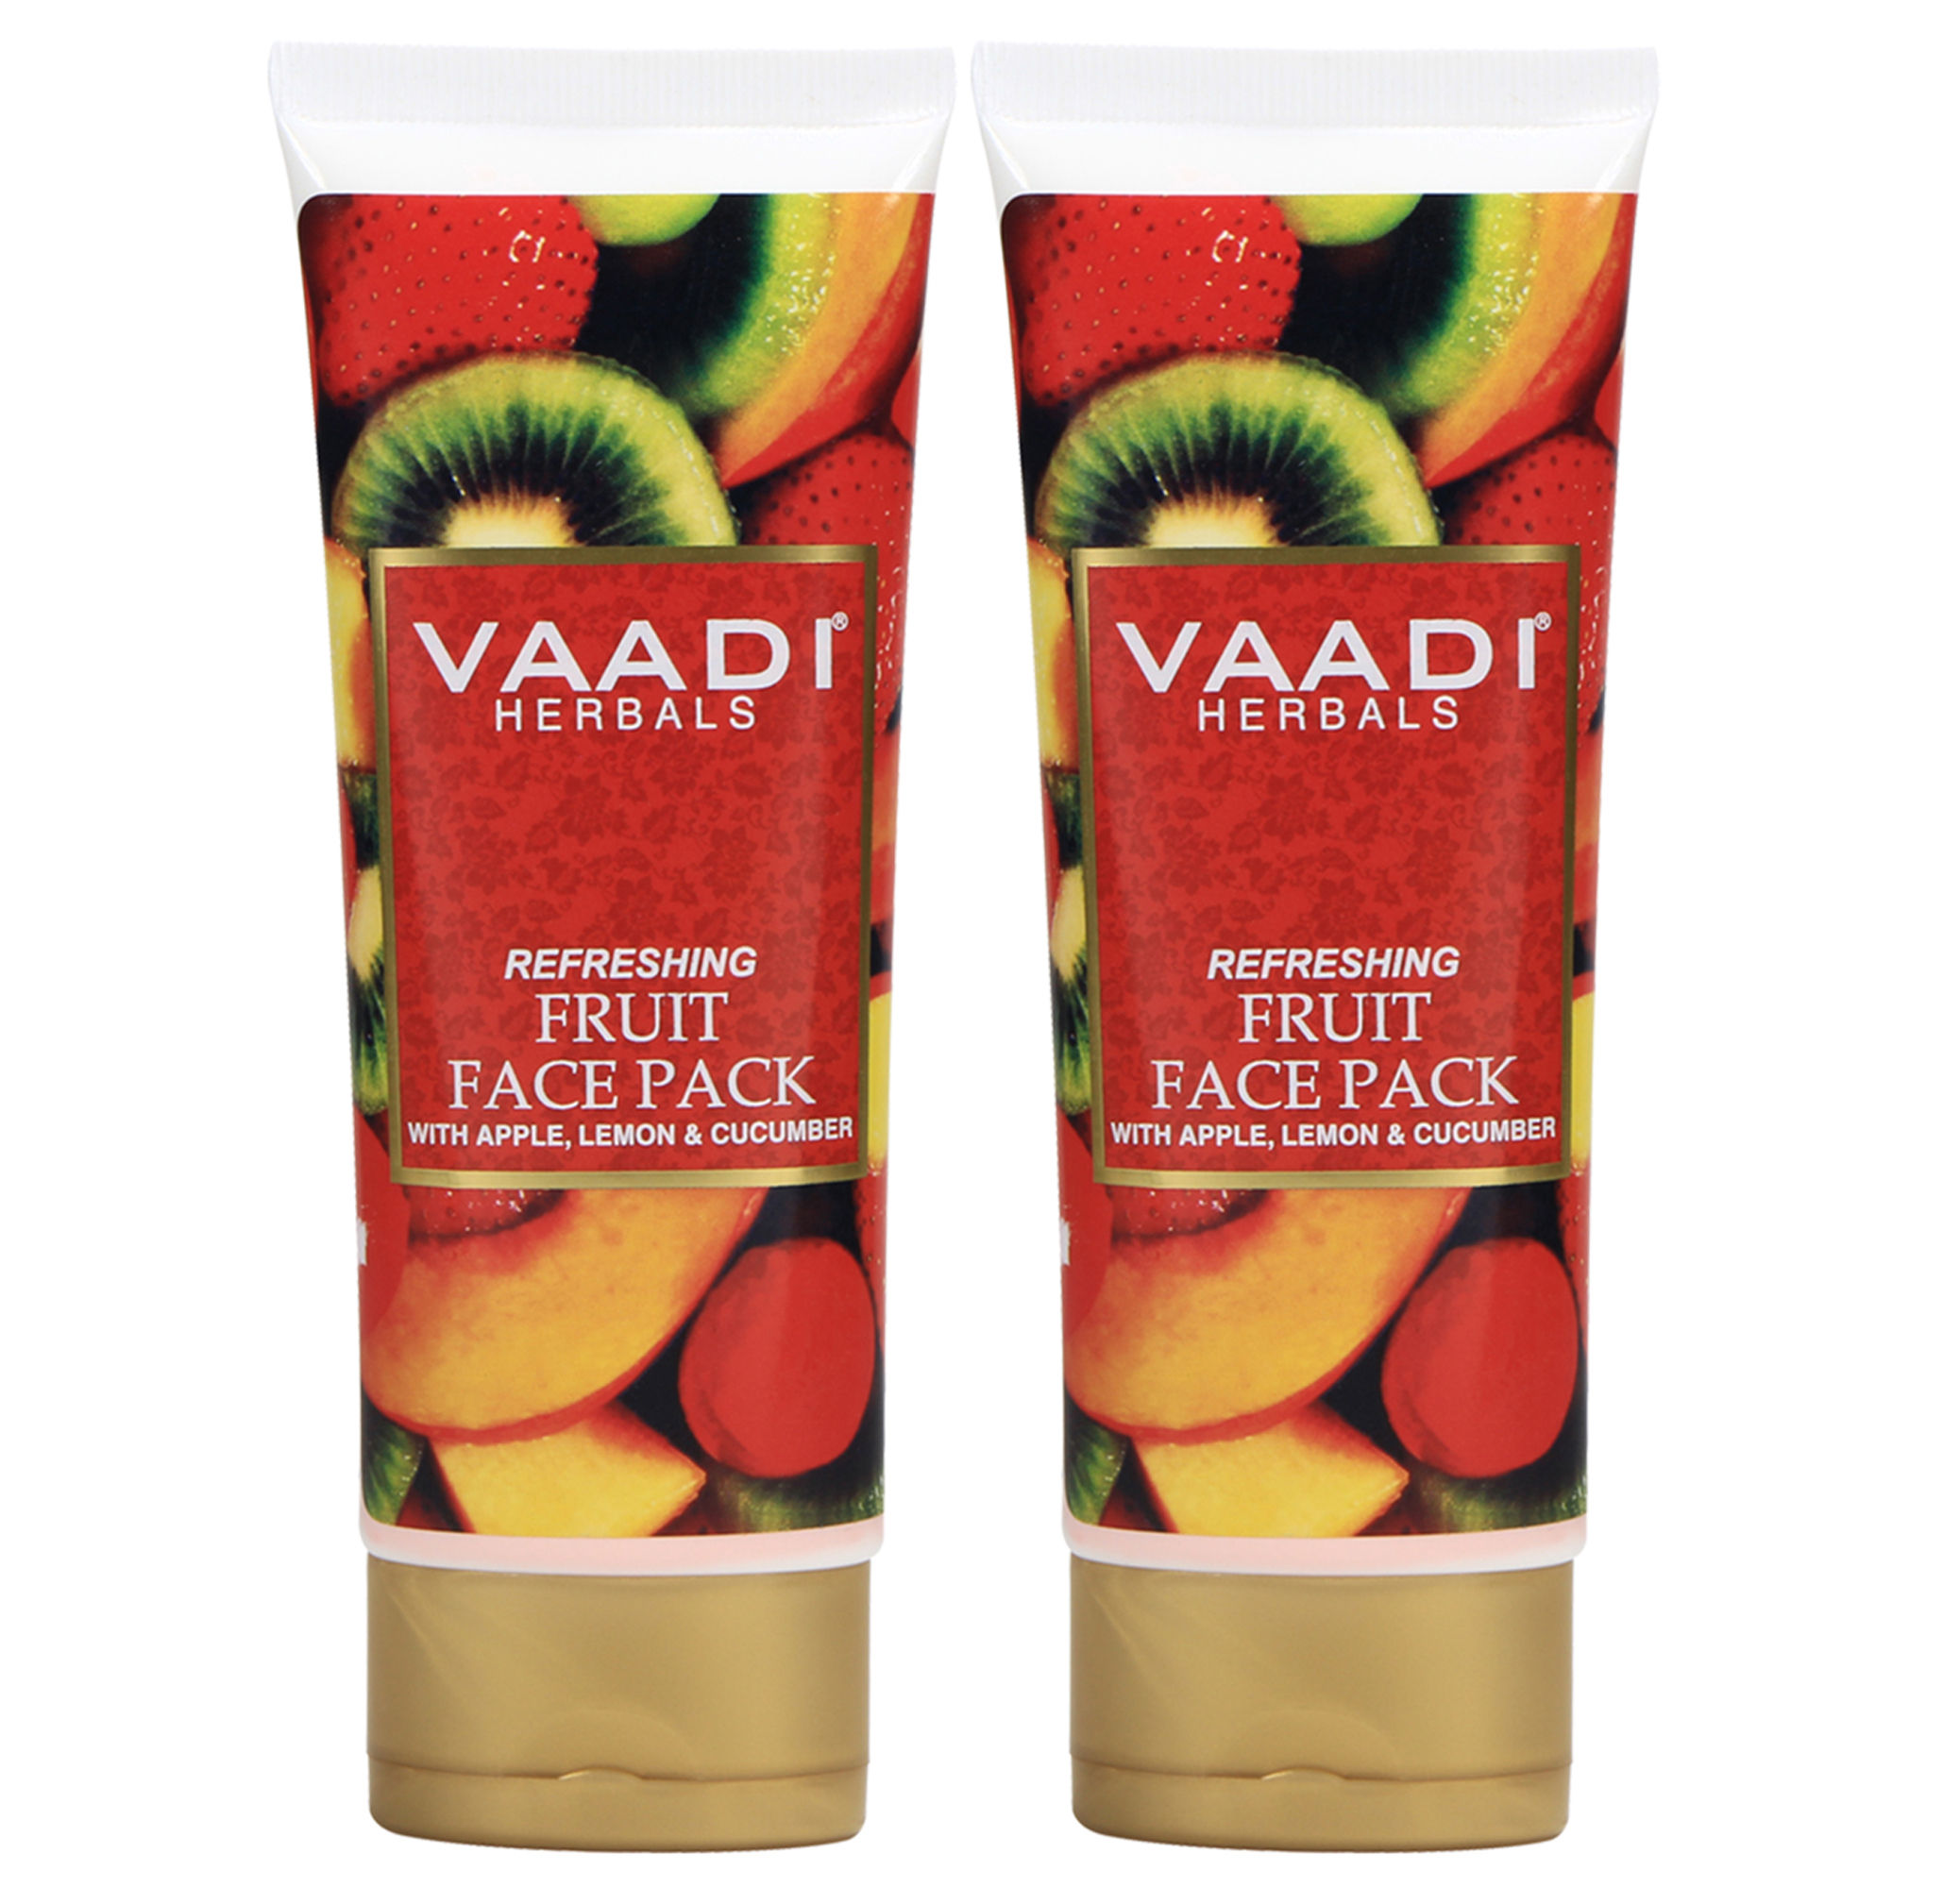 Vaadi Herbal Value Pack of 2 Refreshing Fruit Pack with Apple, Lemon & Cucumber